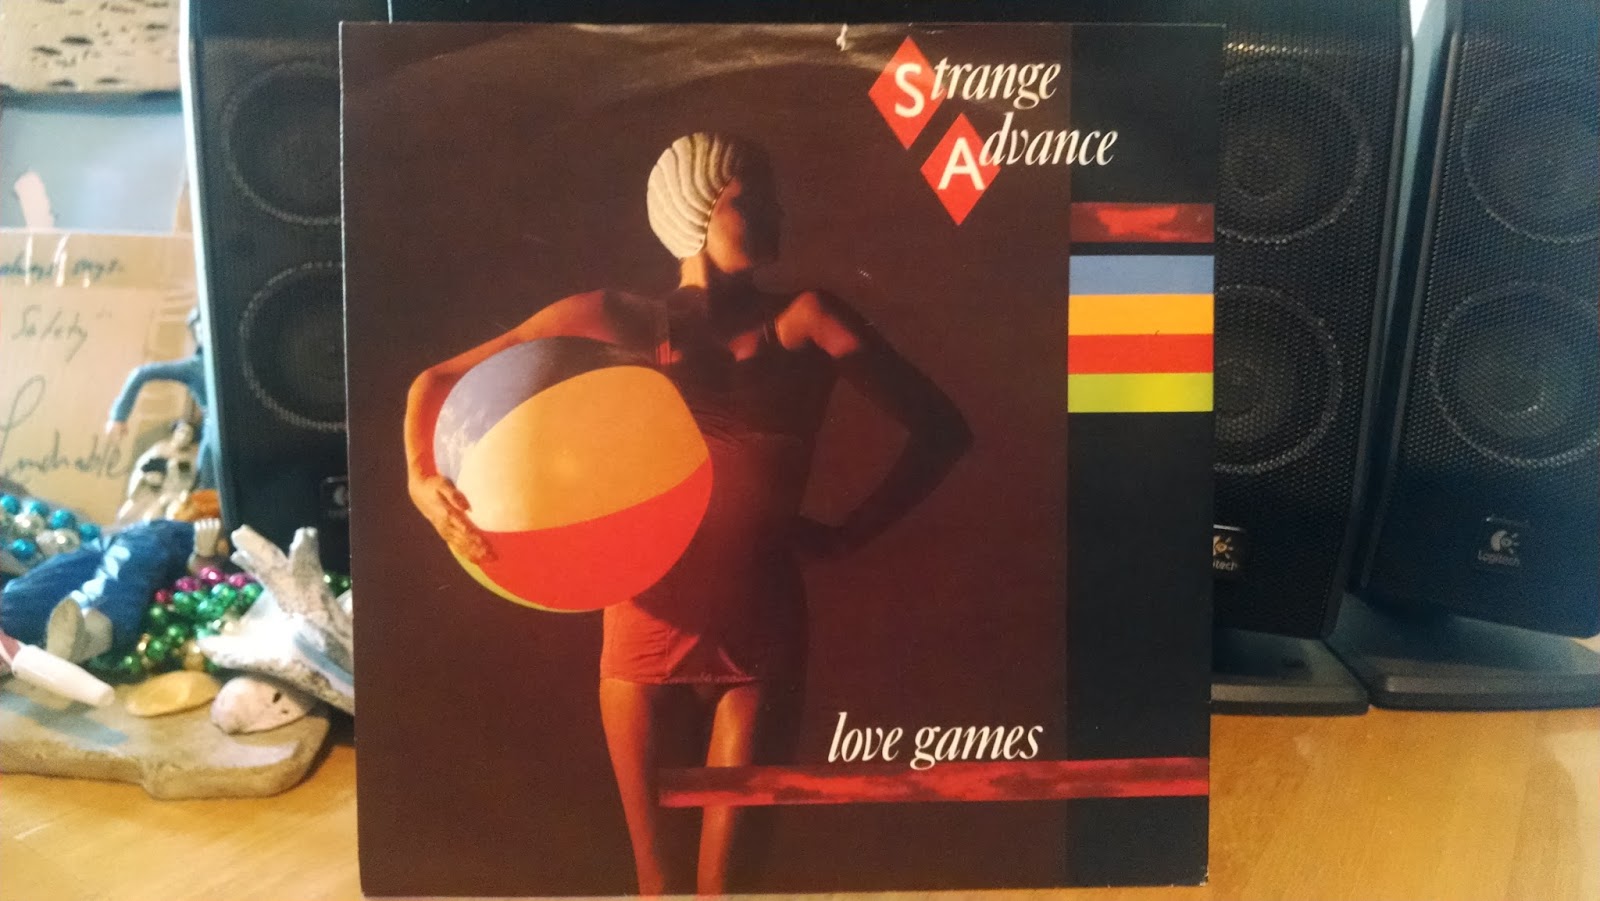 DOWN UNDERGROUND: STRANGE ADVANCE - Love Games 7 w Worlds Away LP 83 w 2wo LP 851600 x 901